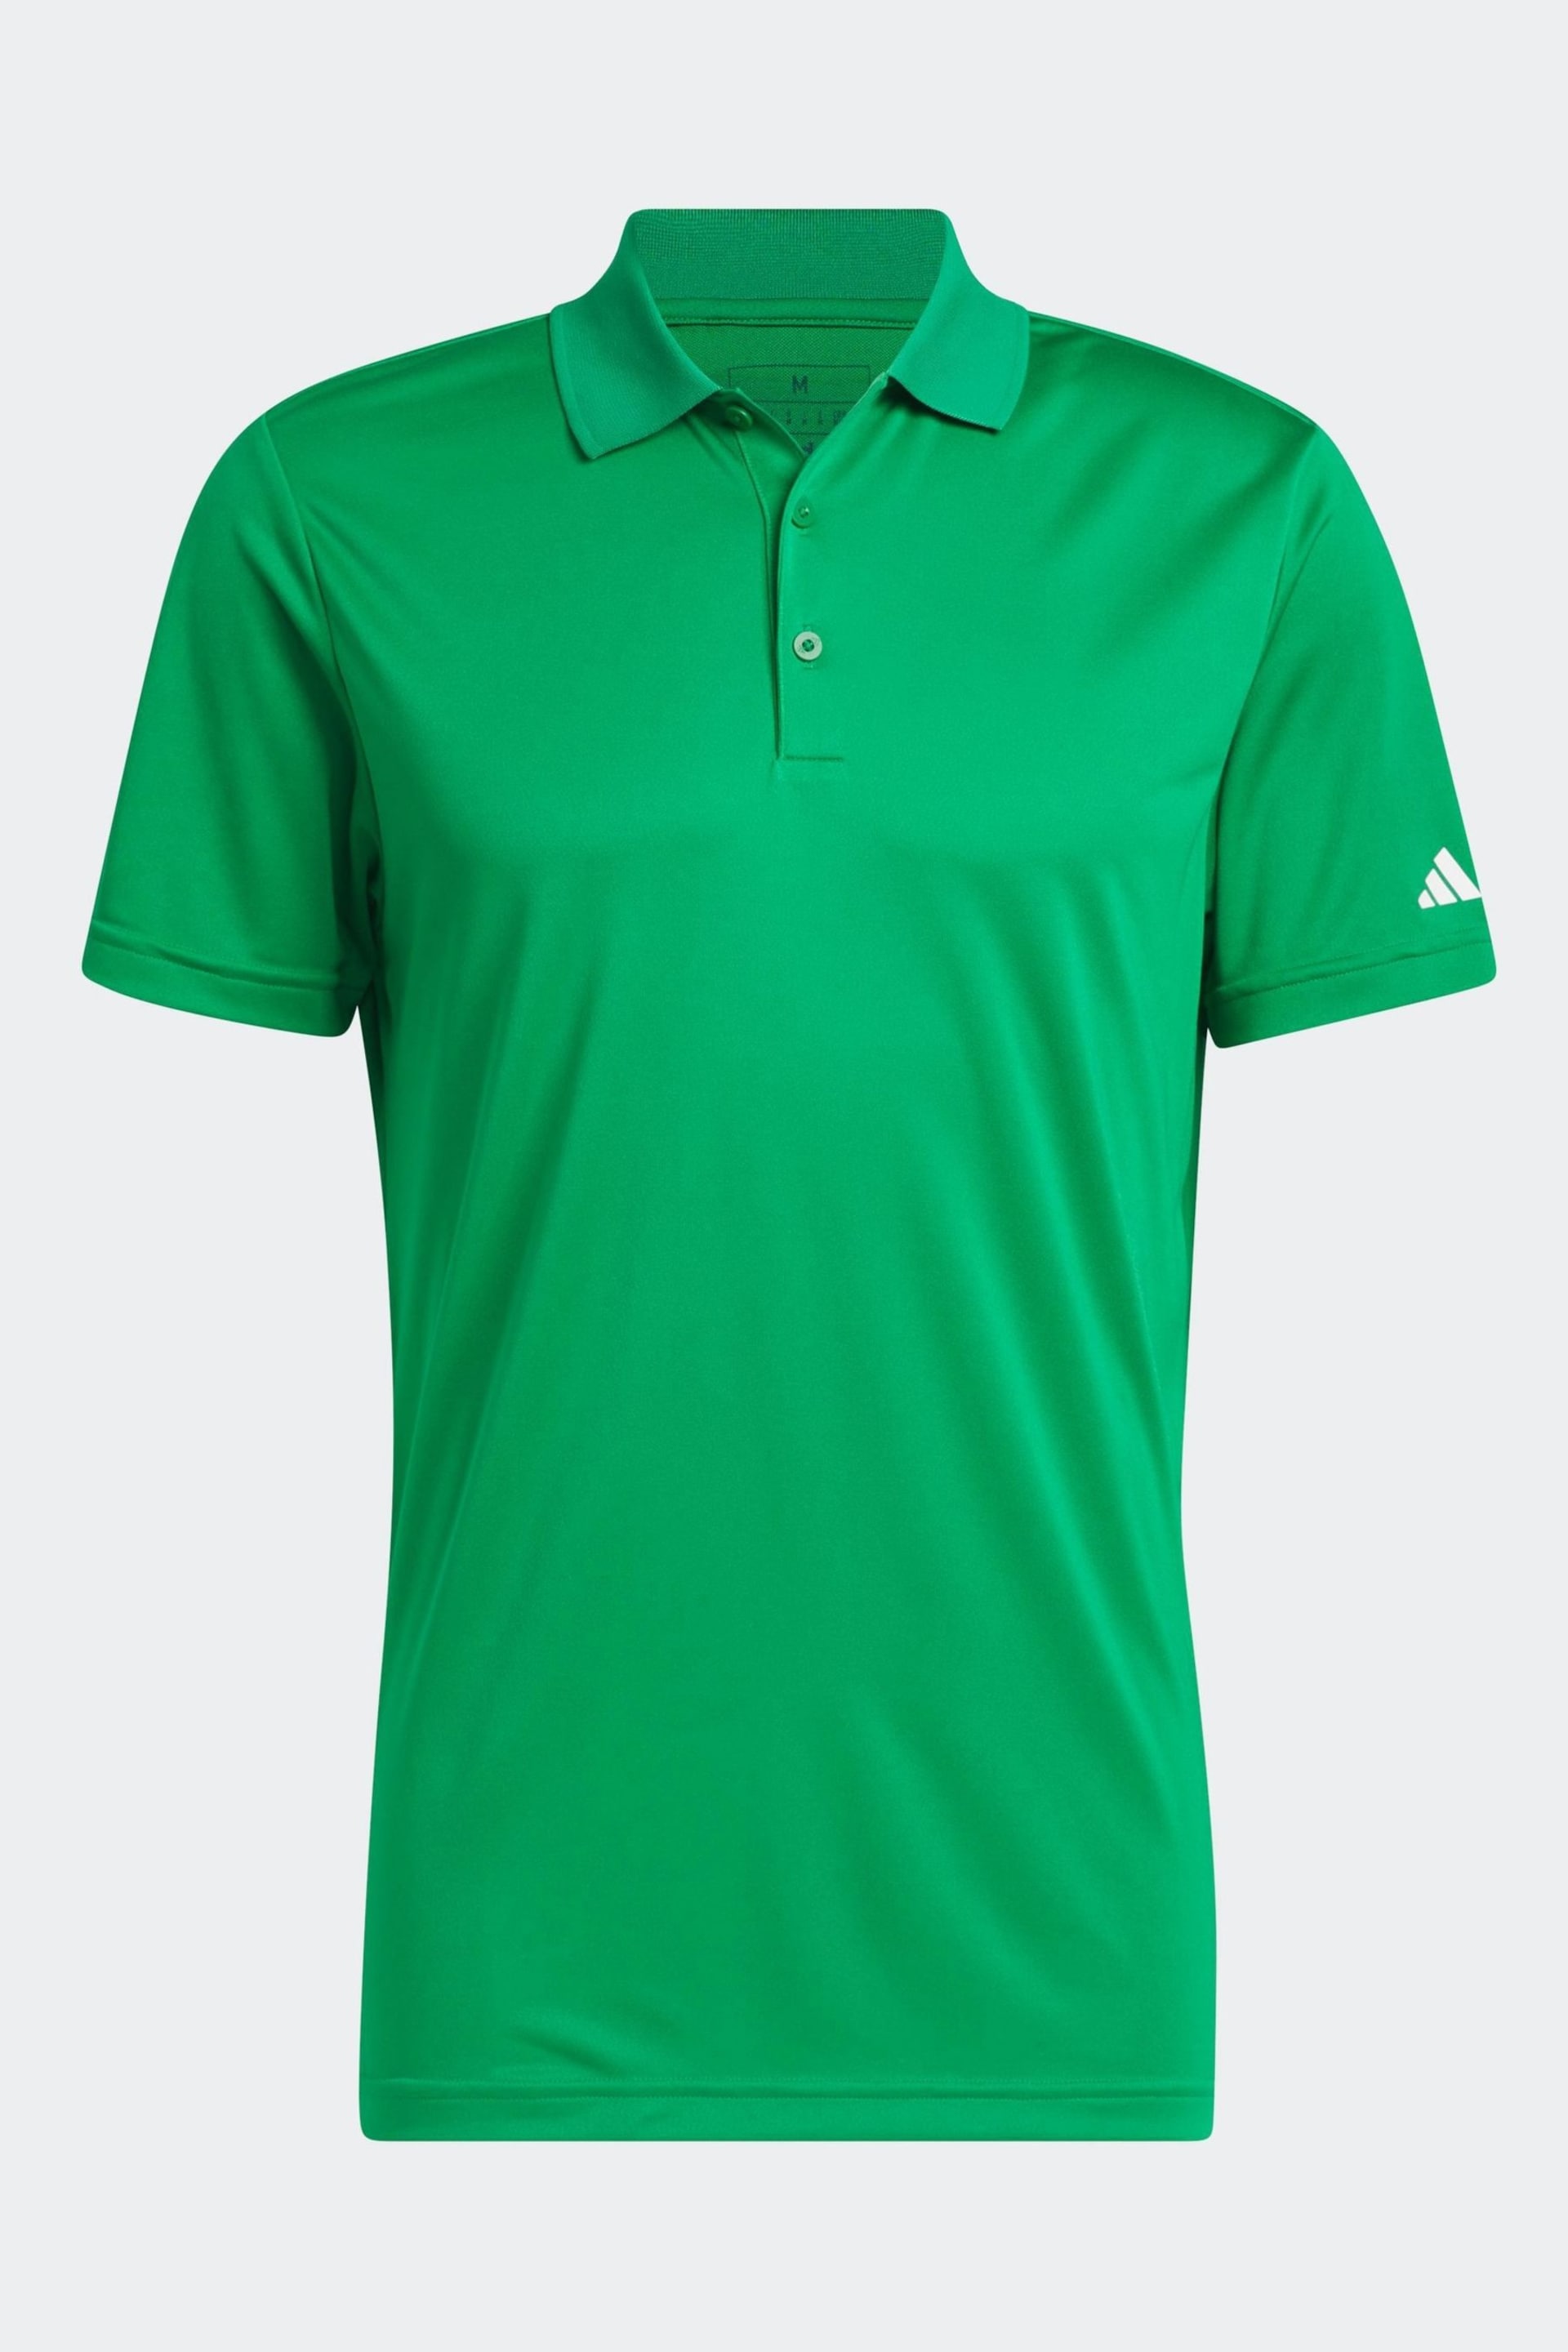 adidas Golf Polo Shirt - Image 7 of 7